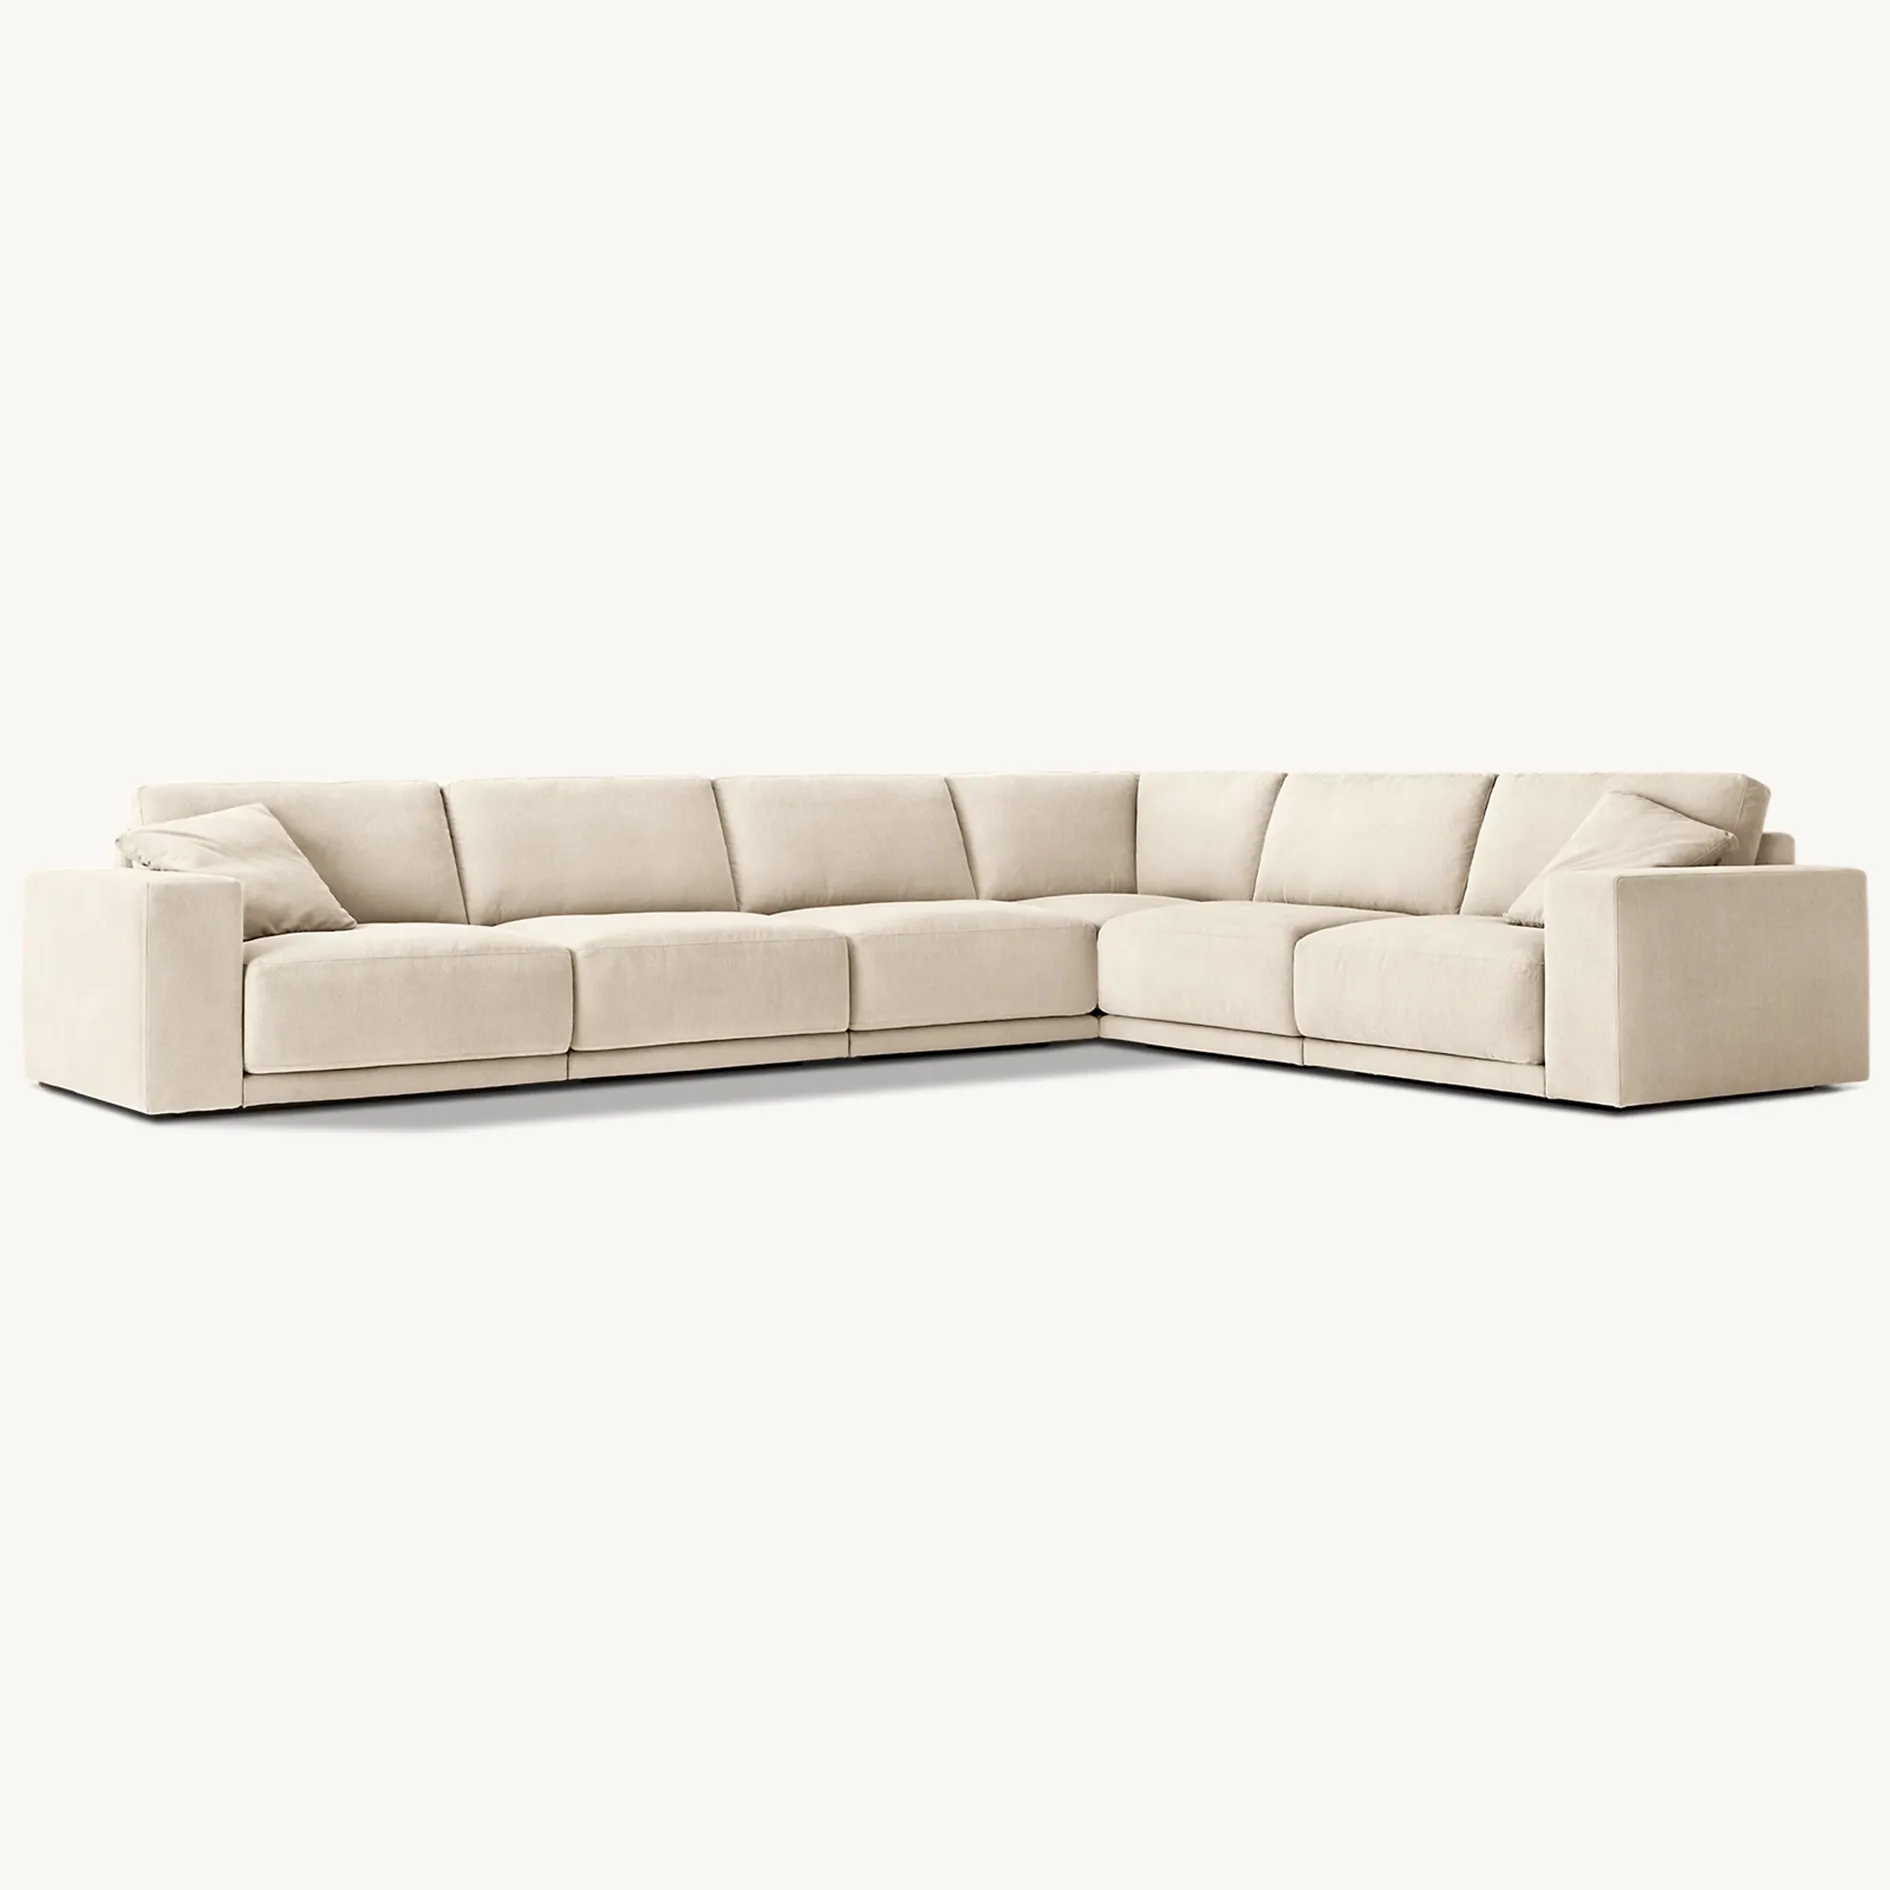 Nuevo diseño moderno sala de estar tapicería tela muebles hechos a mano L sofá para el hogar de lujo